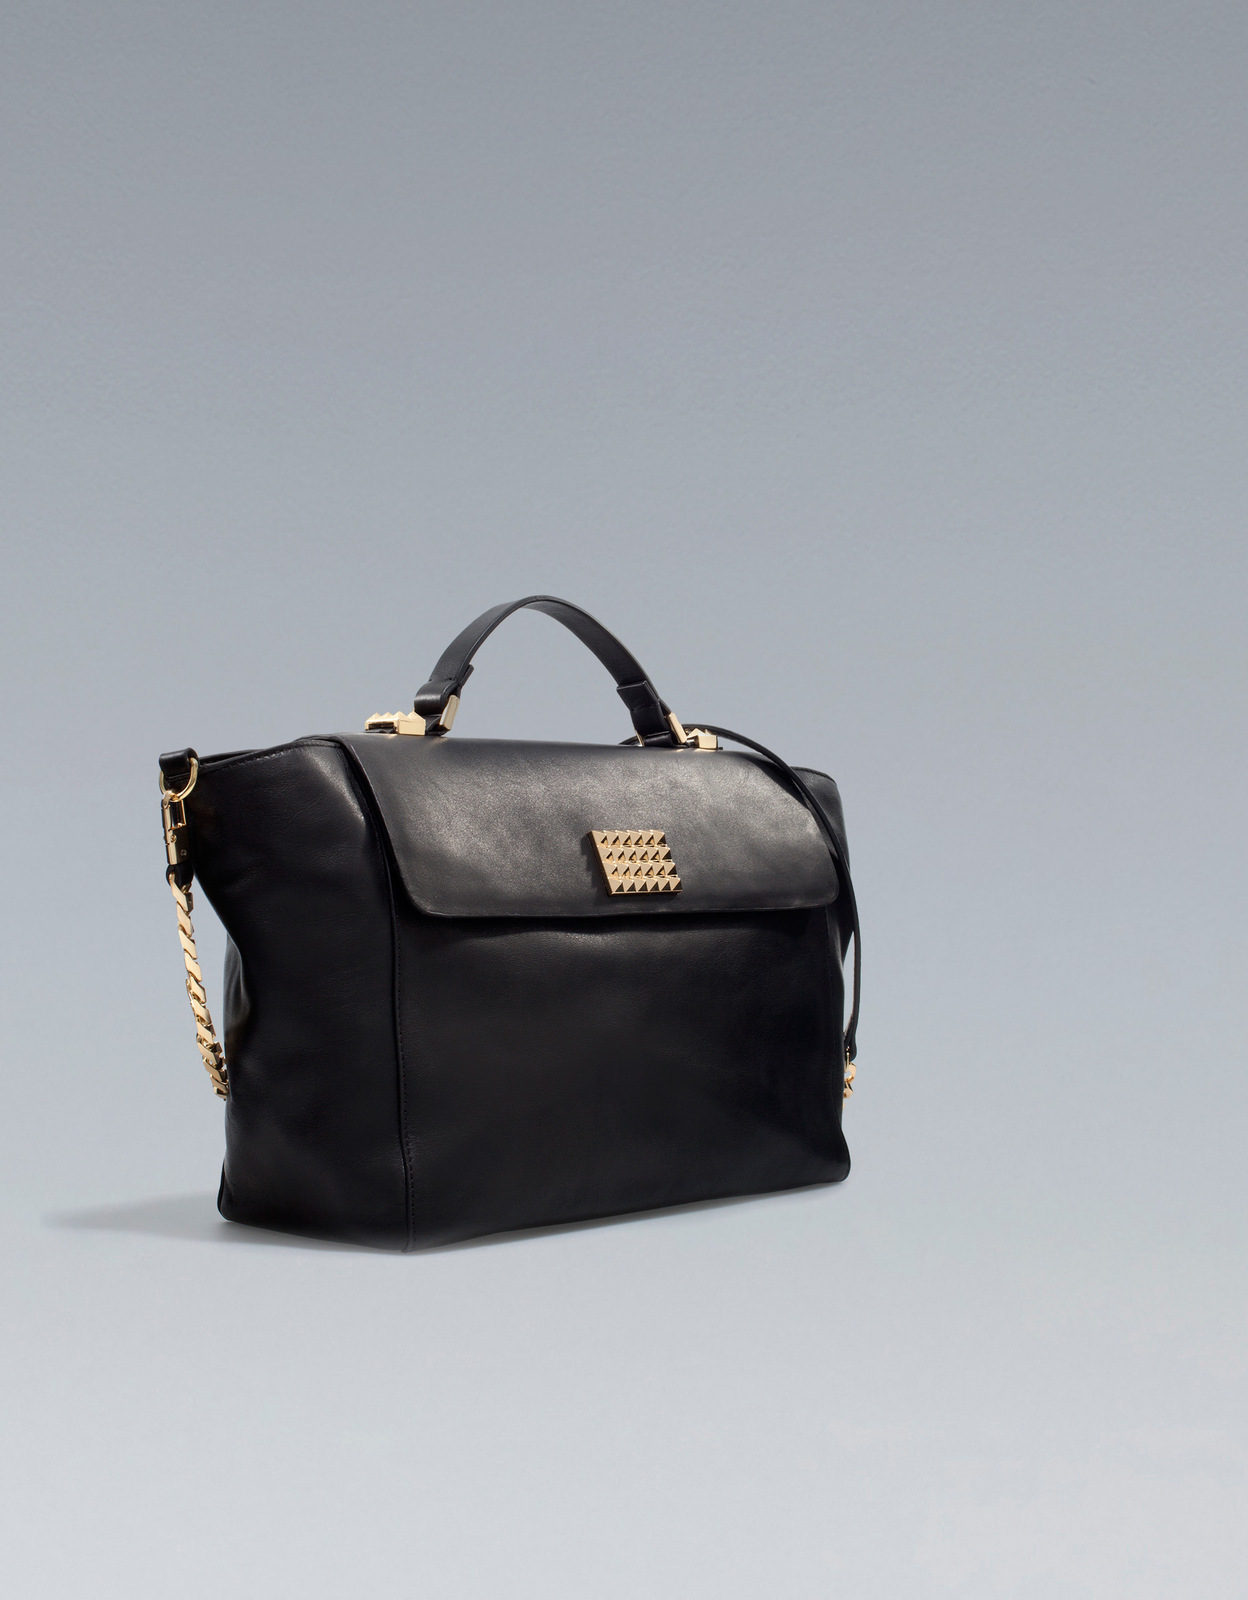 Zara fekete trapéz táska 2012 fotója